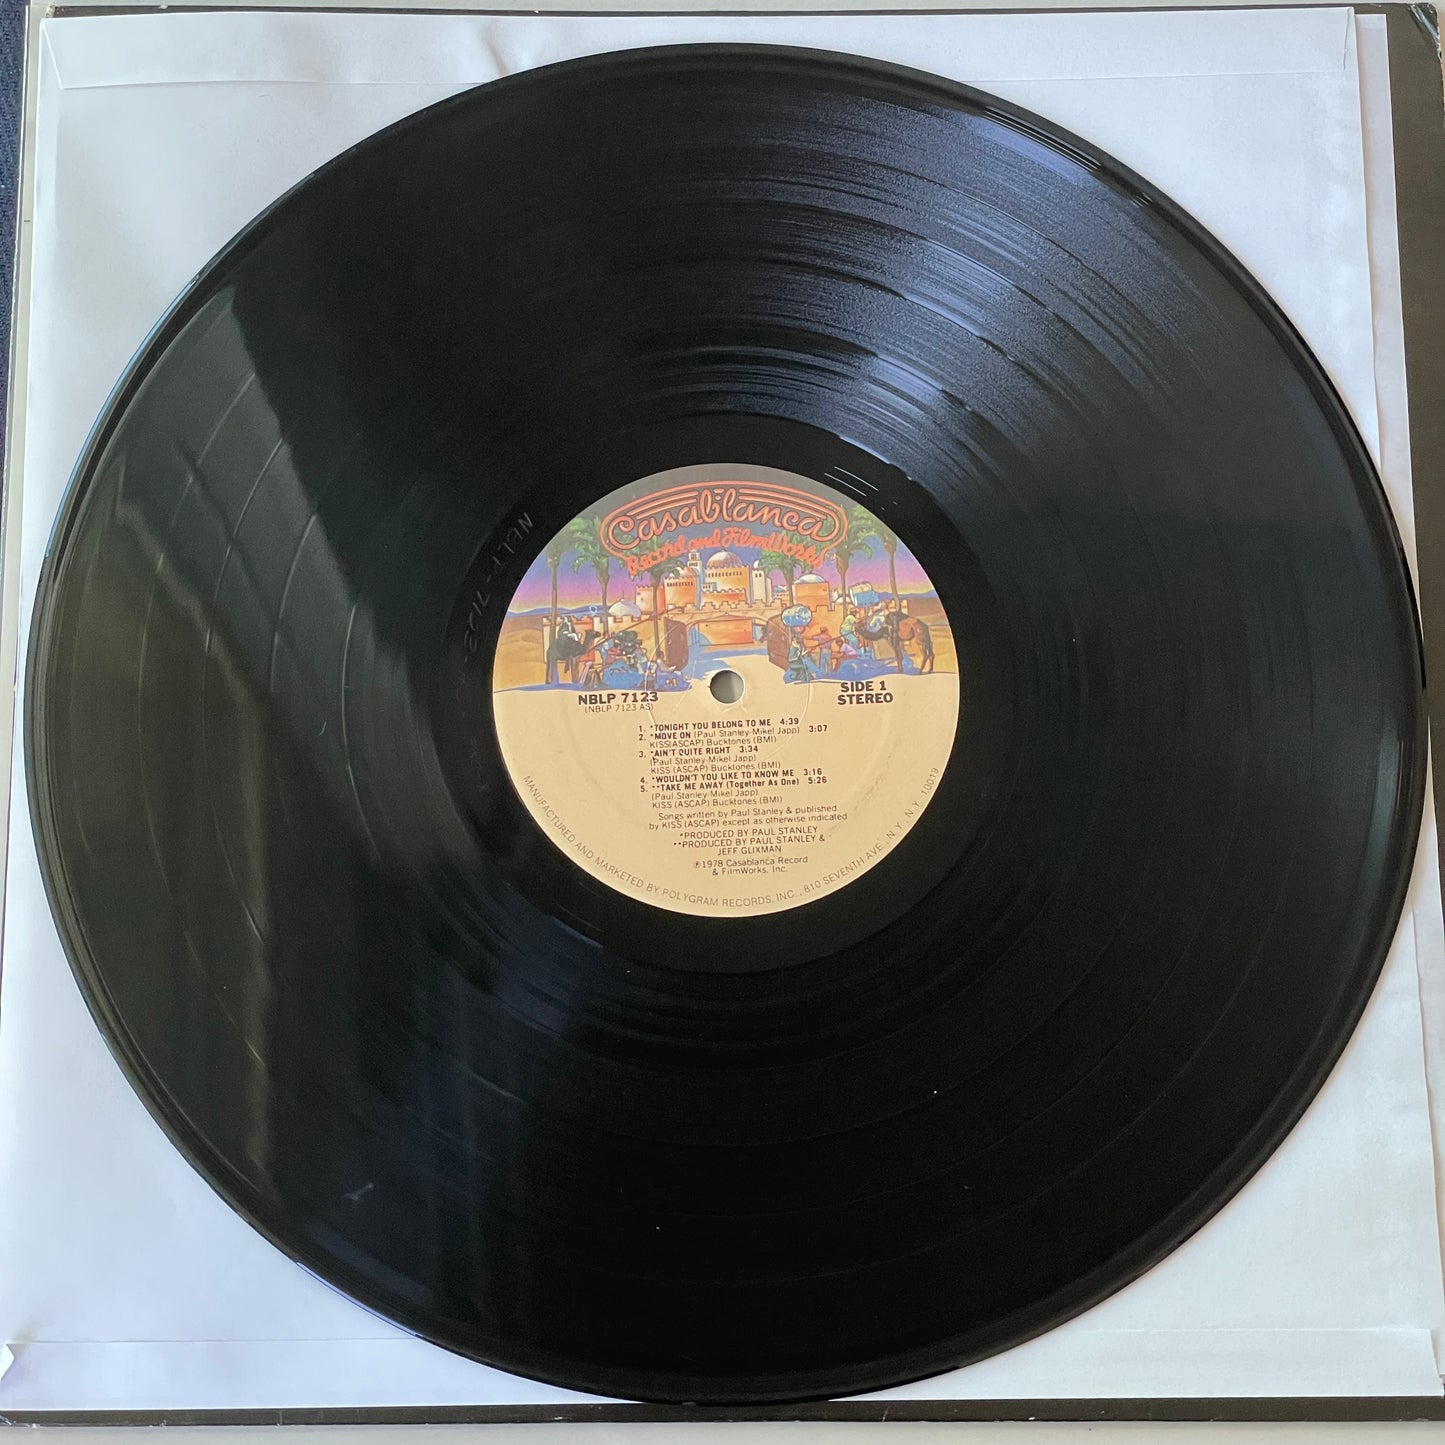 KISS - Paul Stanley original LP (used)